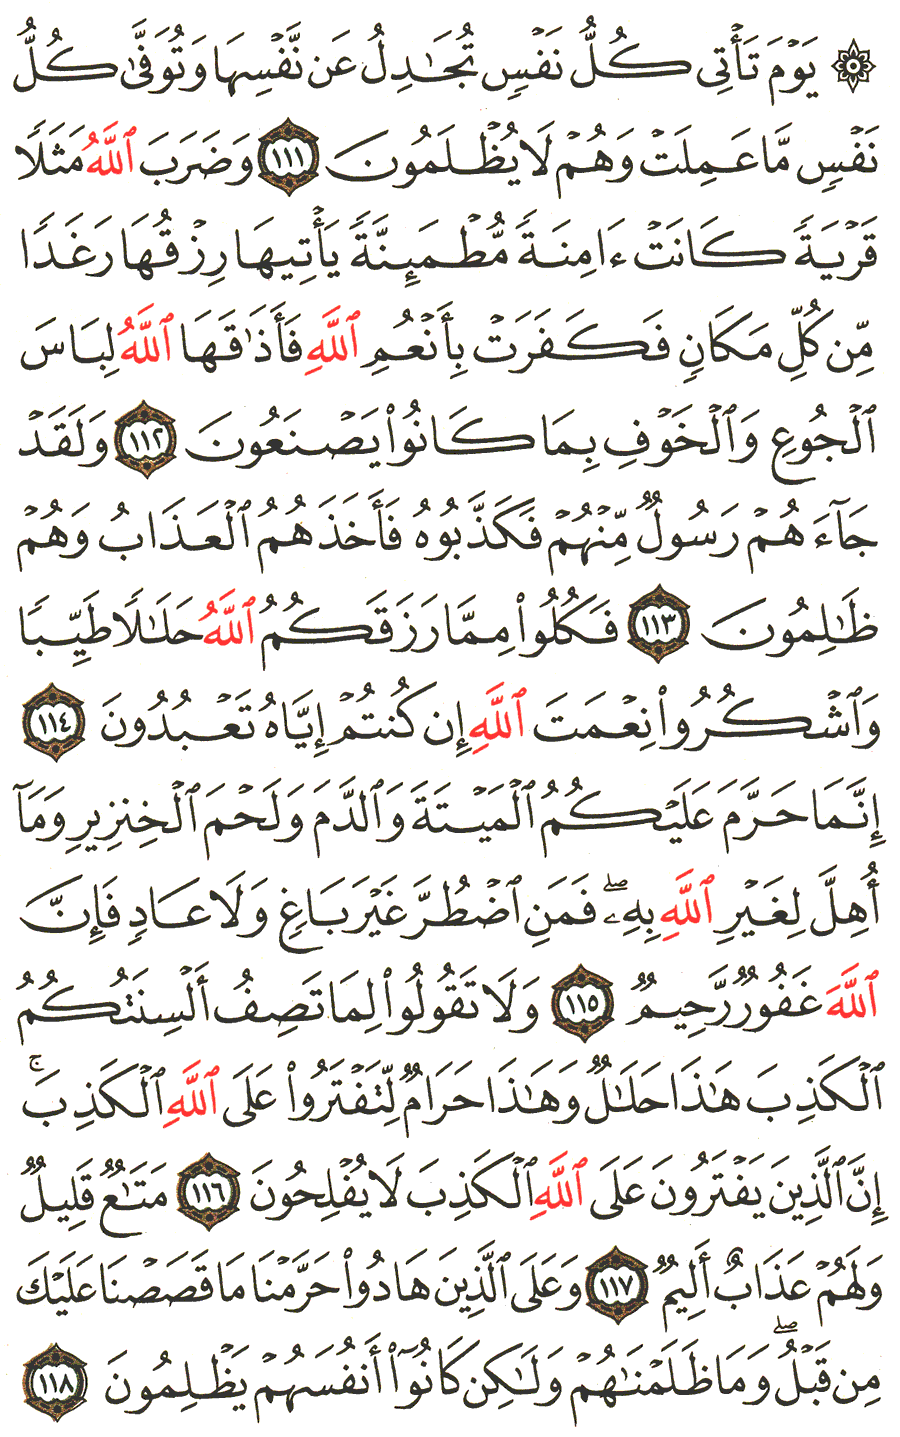 الصفحة رقم 280  من القرآن الكريم مكتوبة من المصحف